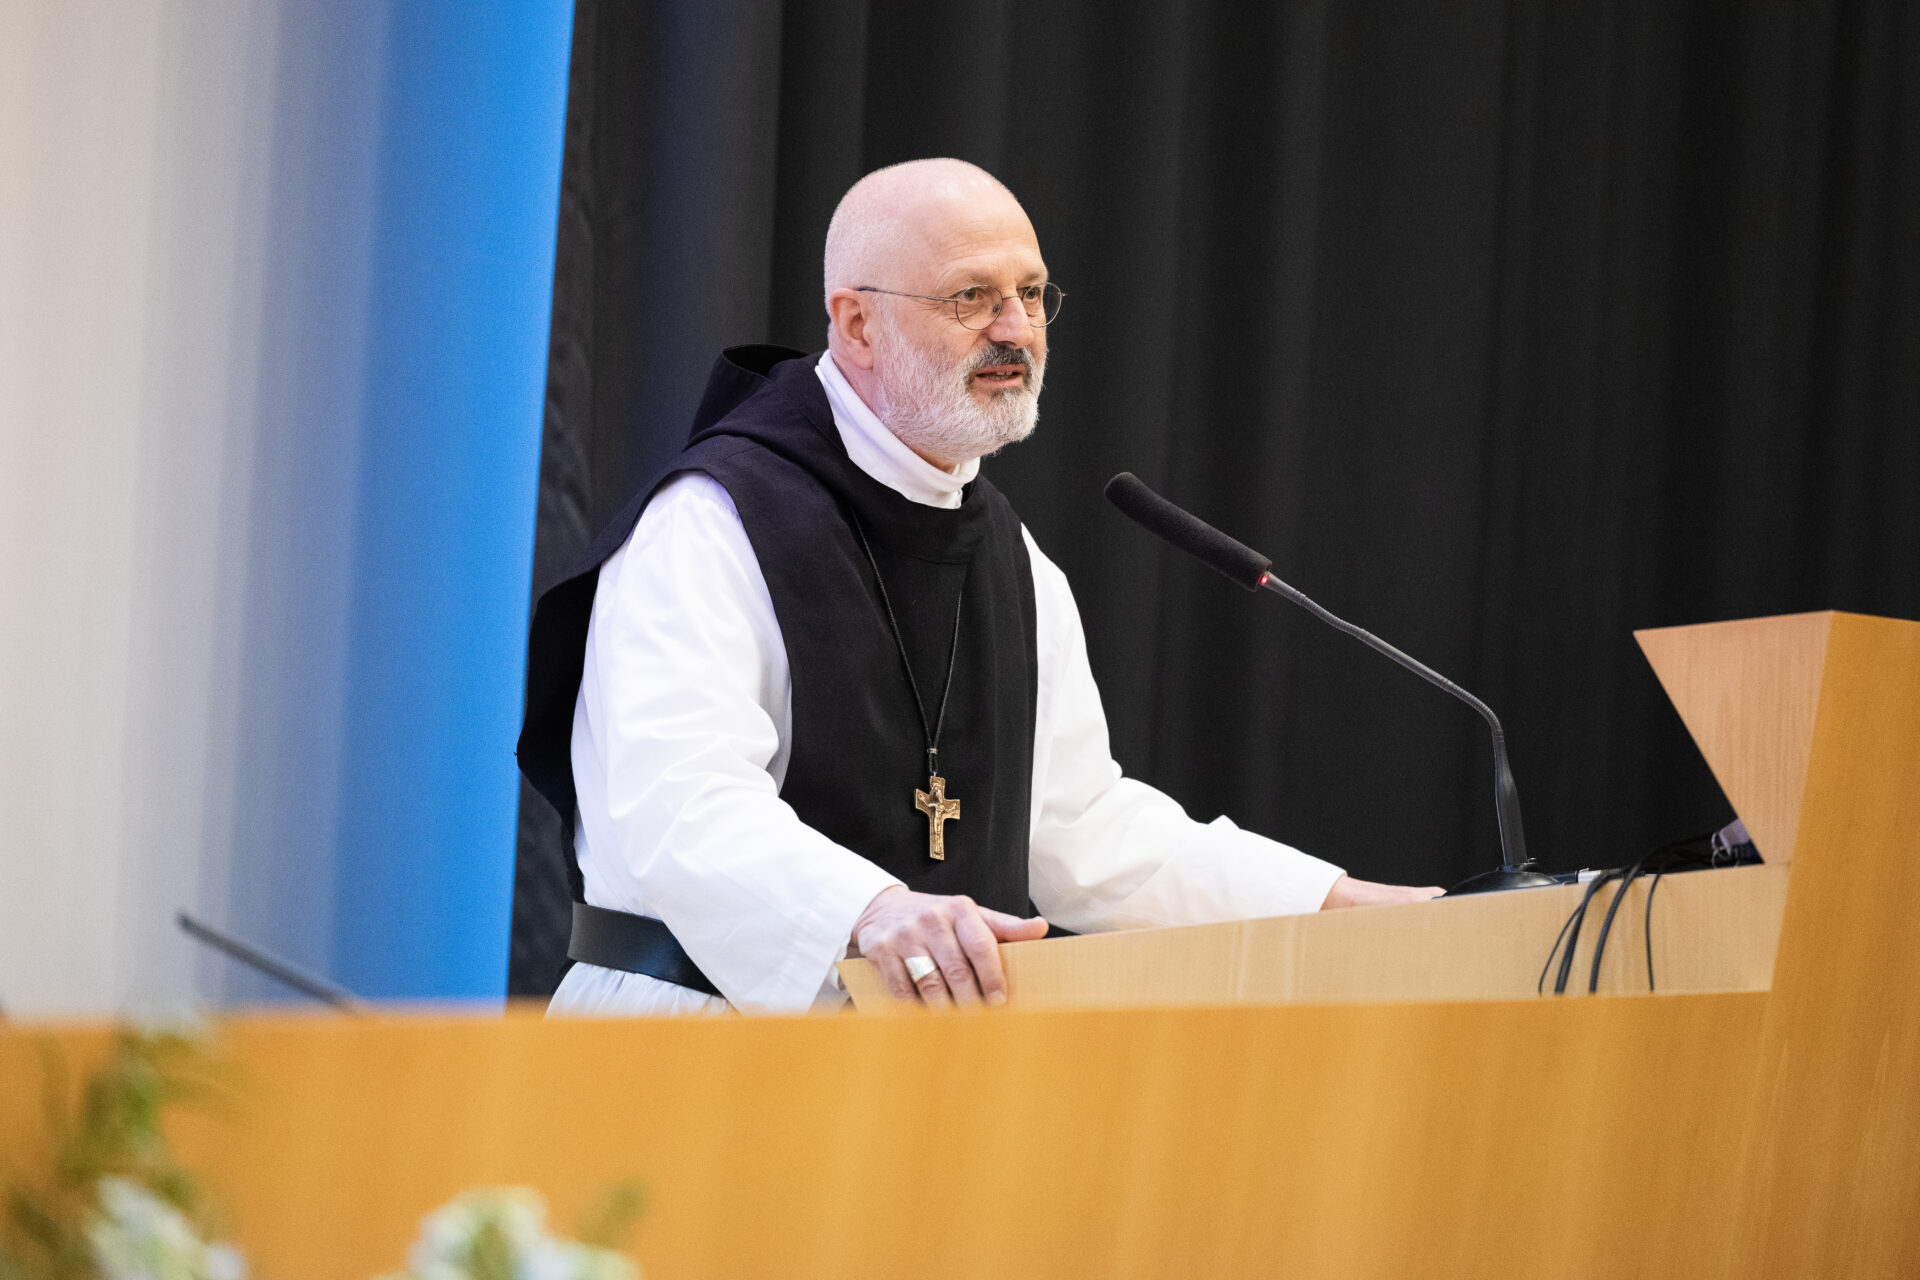 L'abate generale dei cistercensi interviene all'Auditorium USI nell'ambito della sua lectio magistralis per i 30 anni della Facoltà di teologia di Lugano